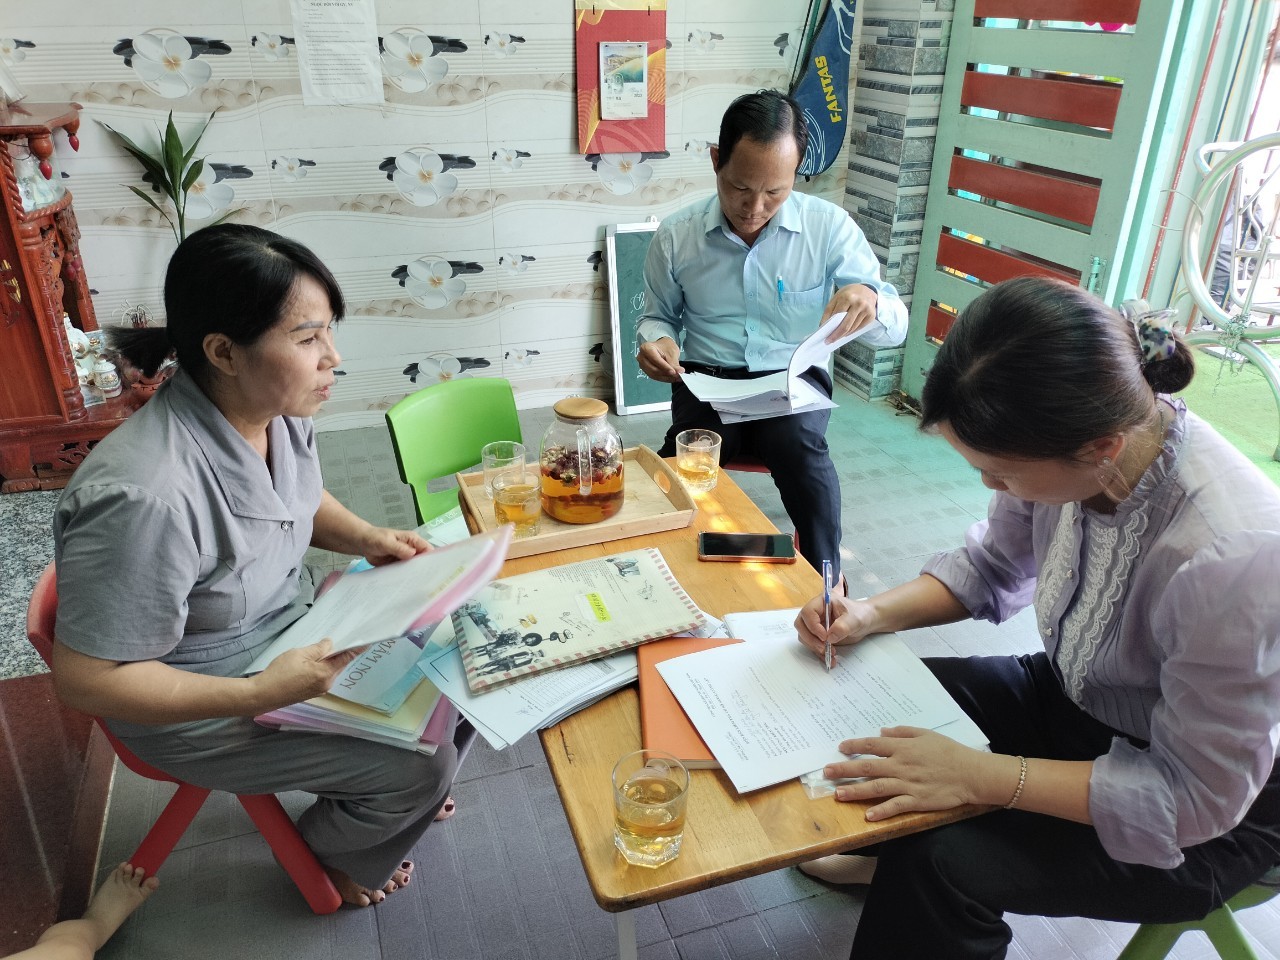 Trường MG Long Hậu tham mưu với UBND xã Long Hậu tăng cường công tác kiểm tra ngoài công lập nhằm tăng cường công tác quản lý, hỗ trợ công tác chuyên môn cho các điểm tư thục.